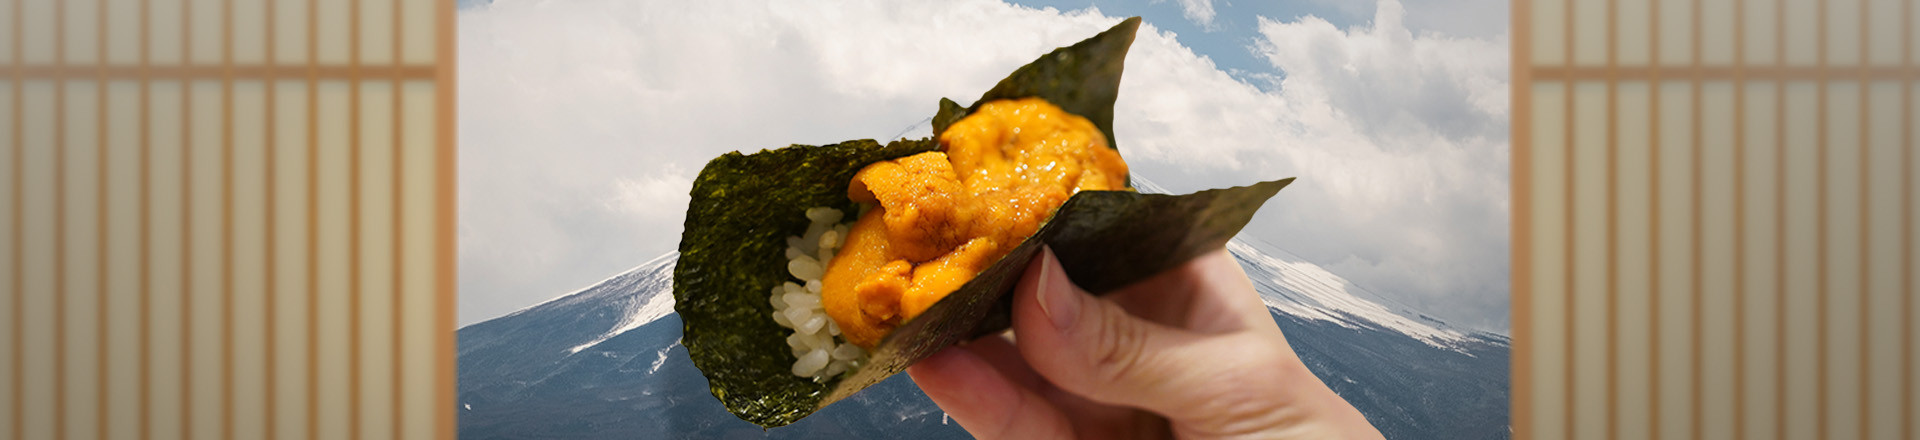 เชลล์ชวนชิมพาทัวร์ทริปอาหารญี่ปุ่นทั่วกรุงเทพฯ